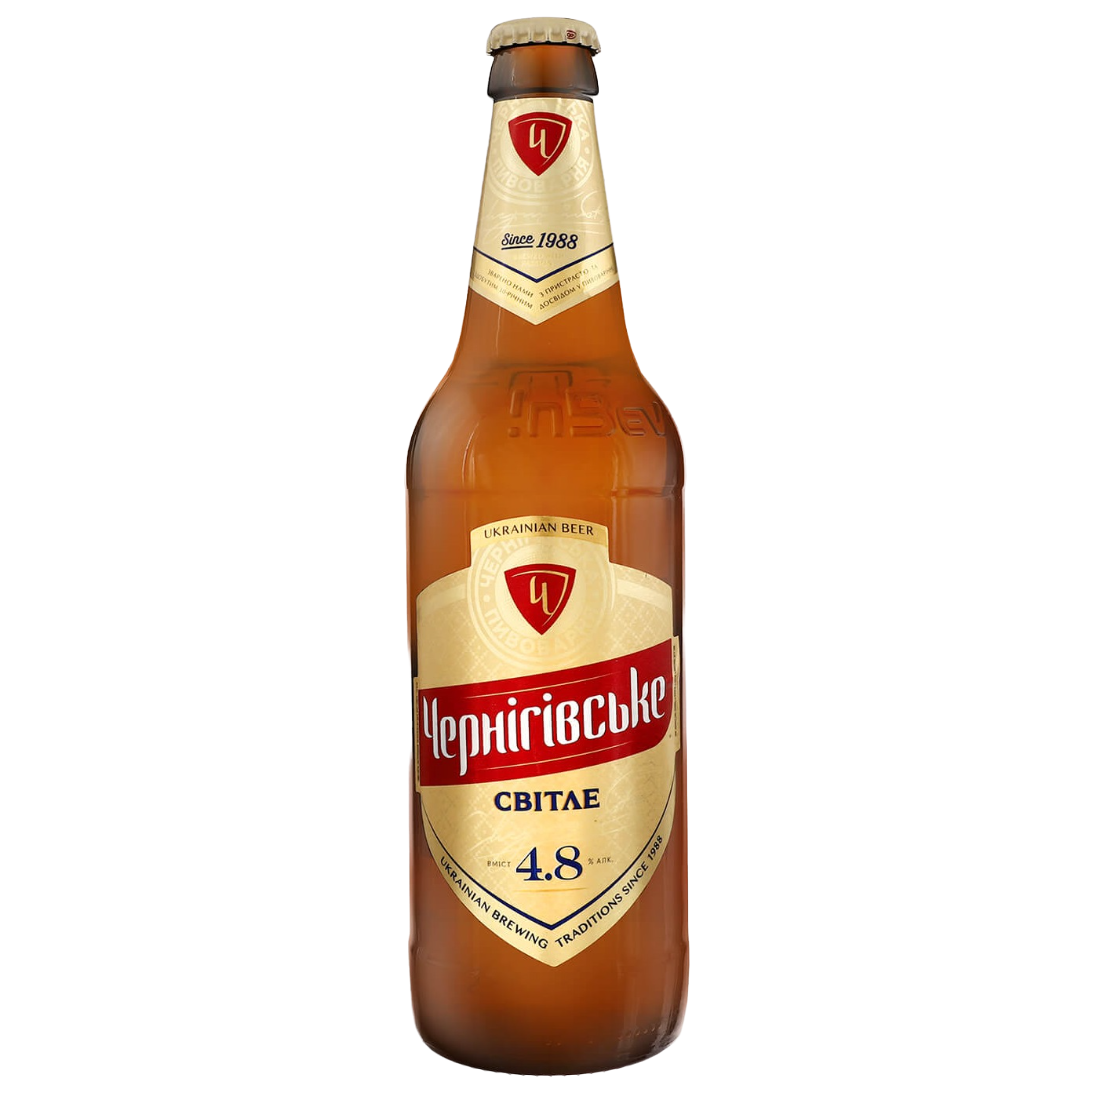 Пиво Чернігівське светлое, 4,8%, 3 л (6 шт. по 0,5 л) (400707) - фото 1